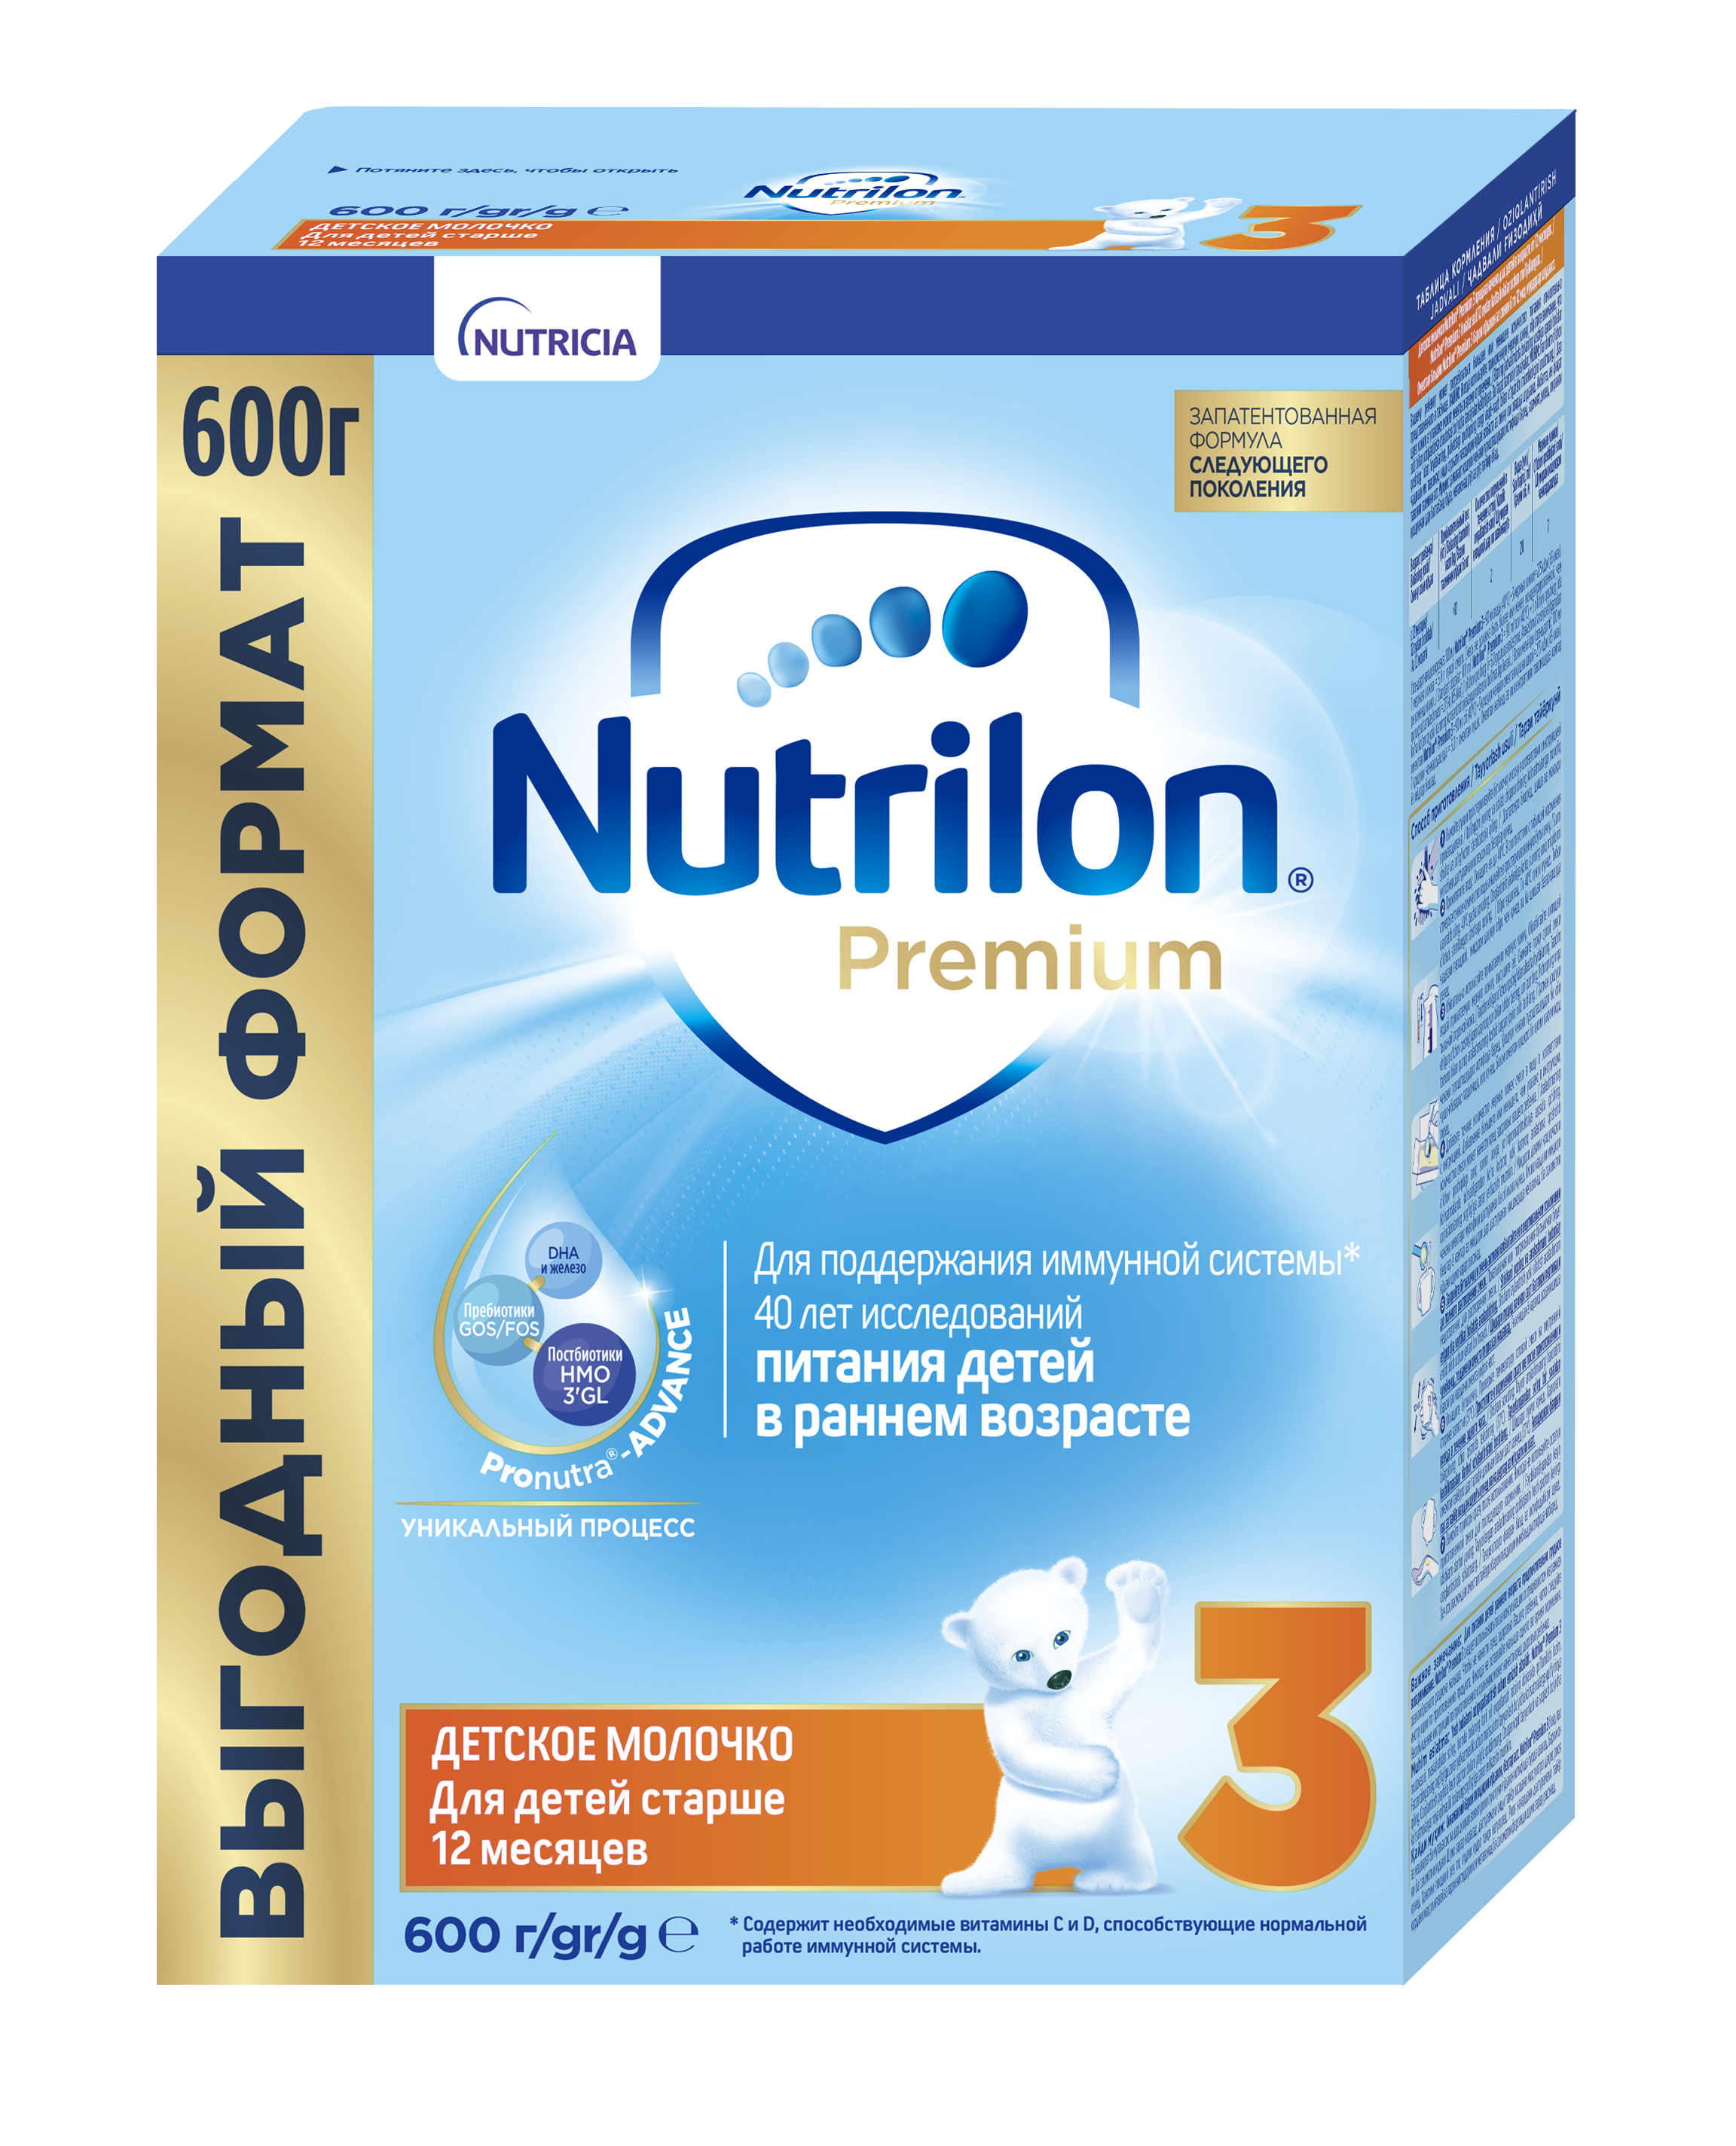 ნუტრილონი პრემიუმი 3 / Nutrilon Premium 3